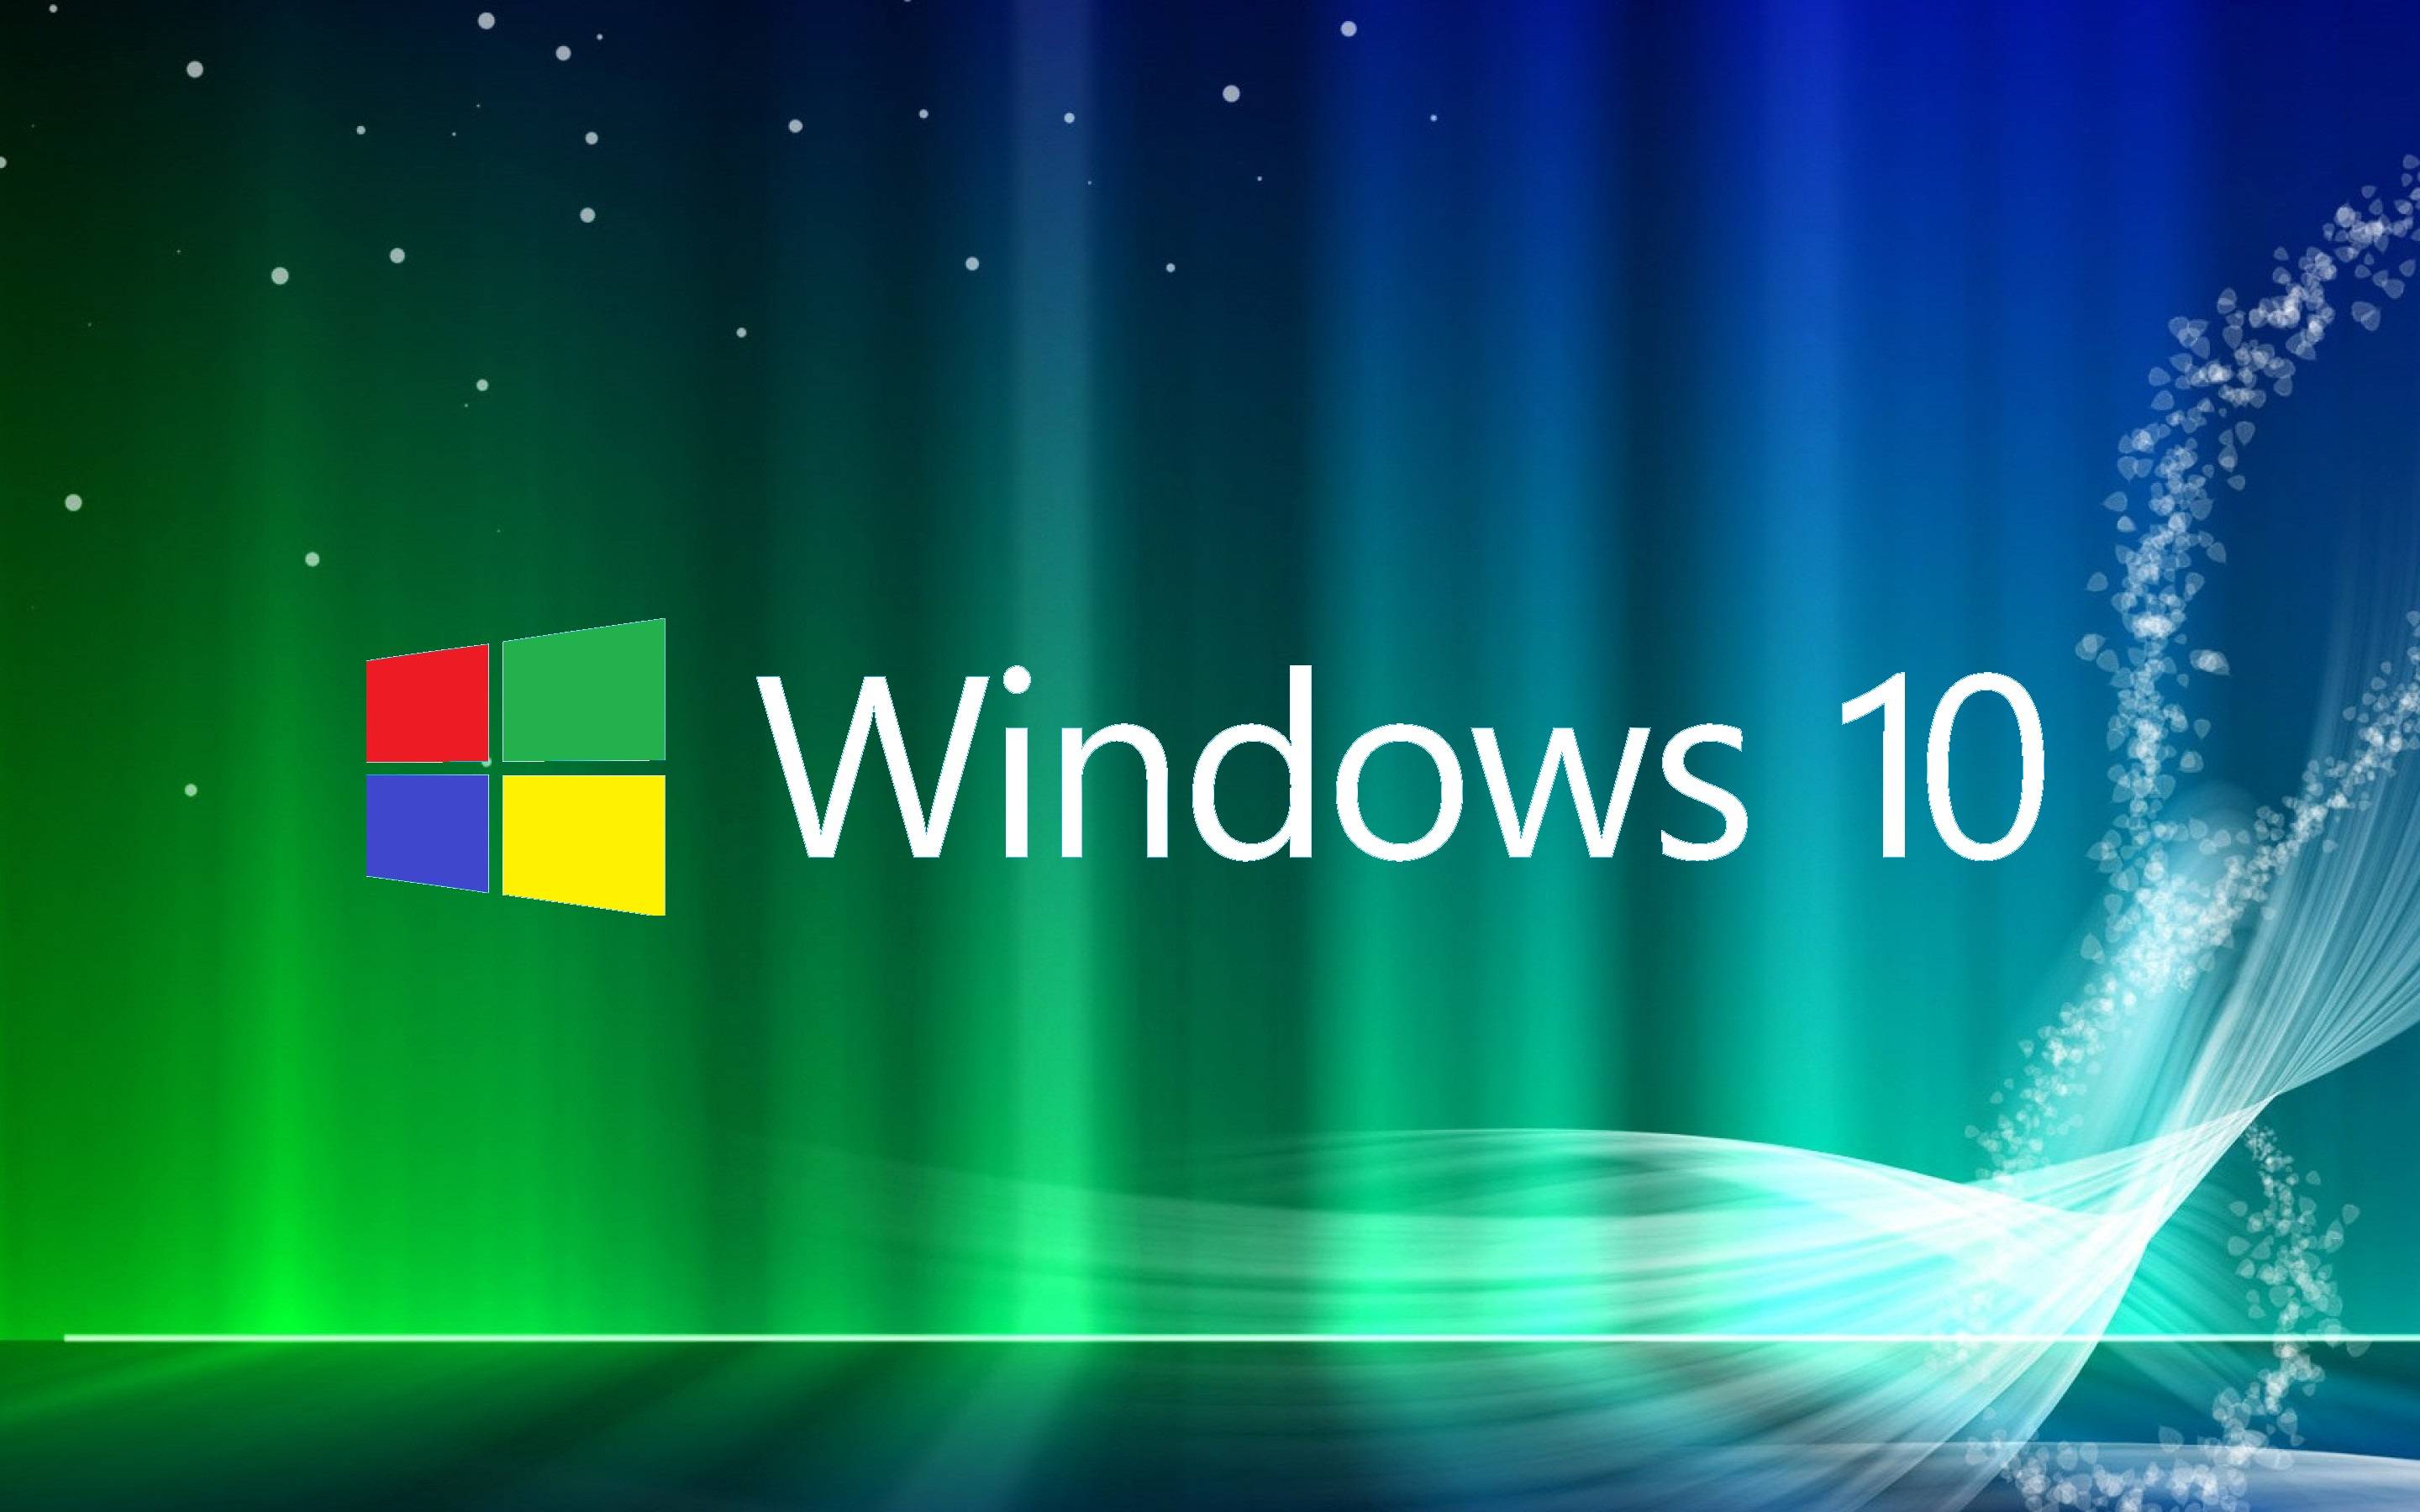 Windows 10 fan